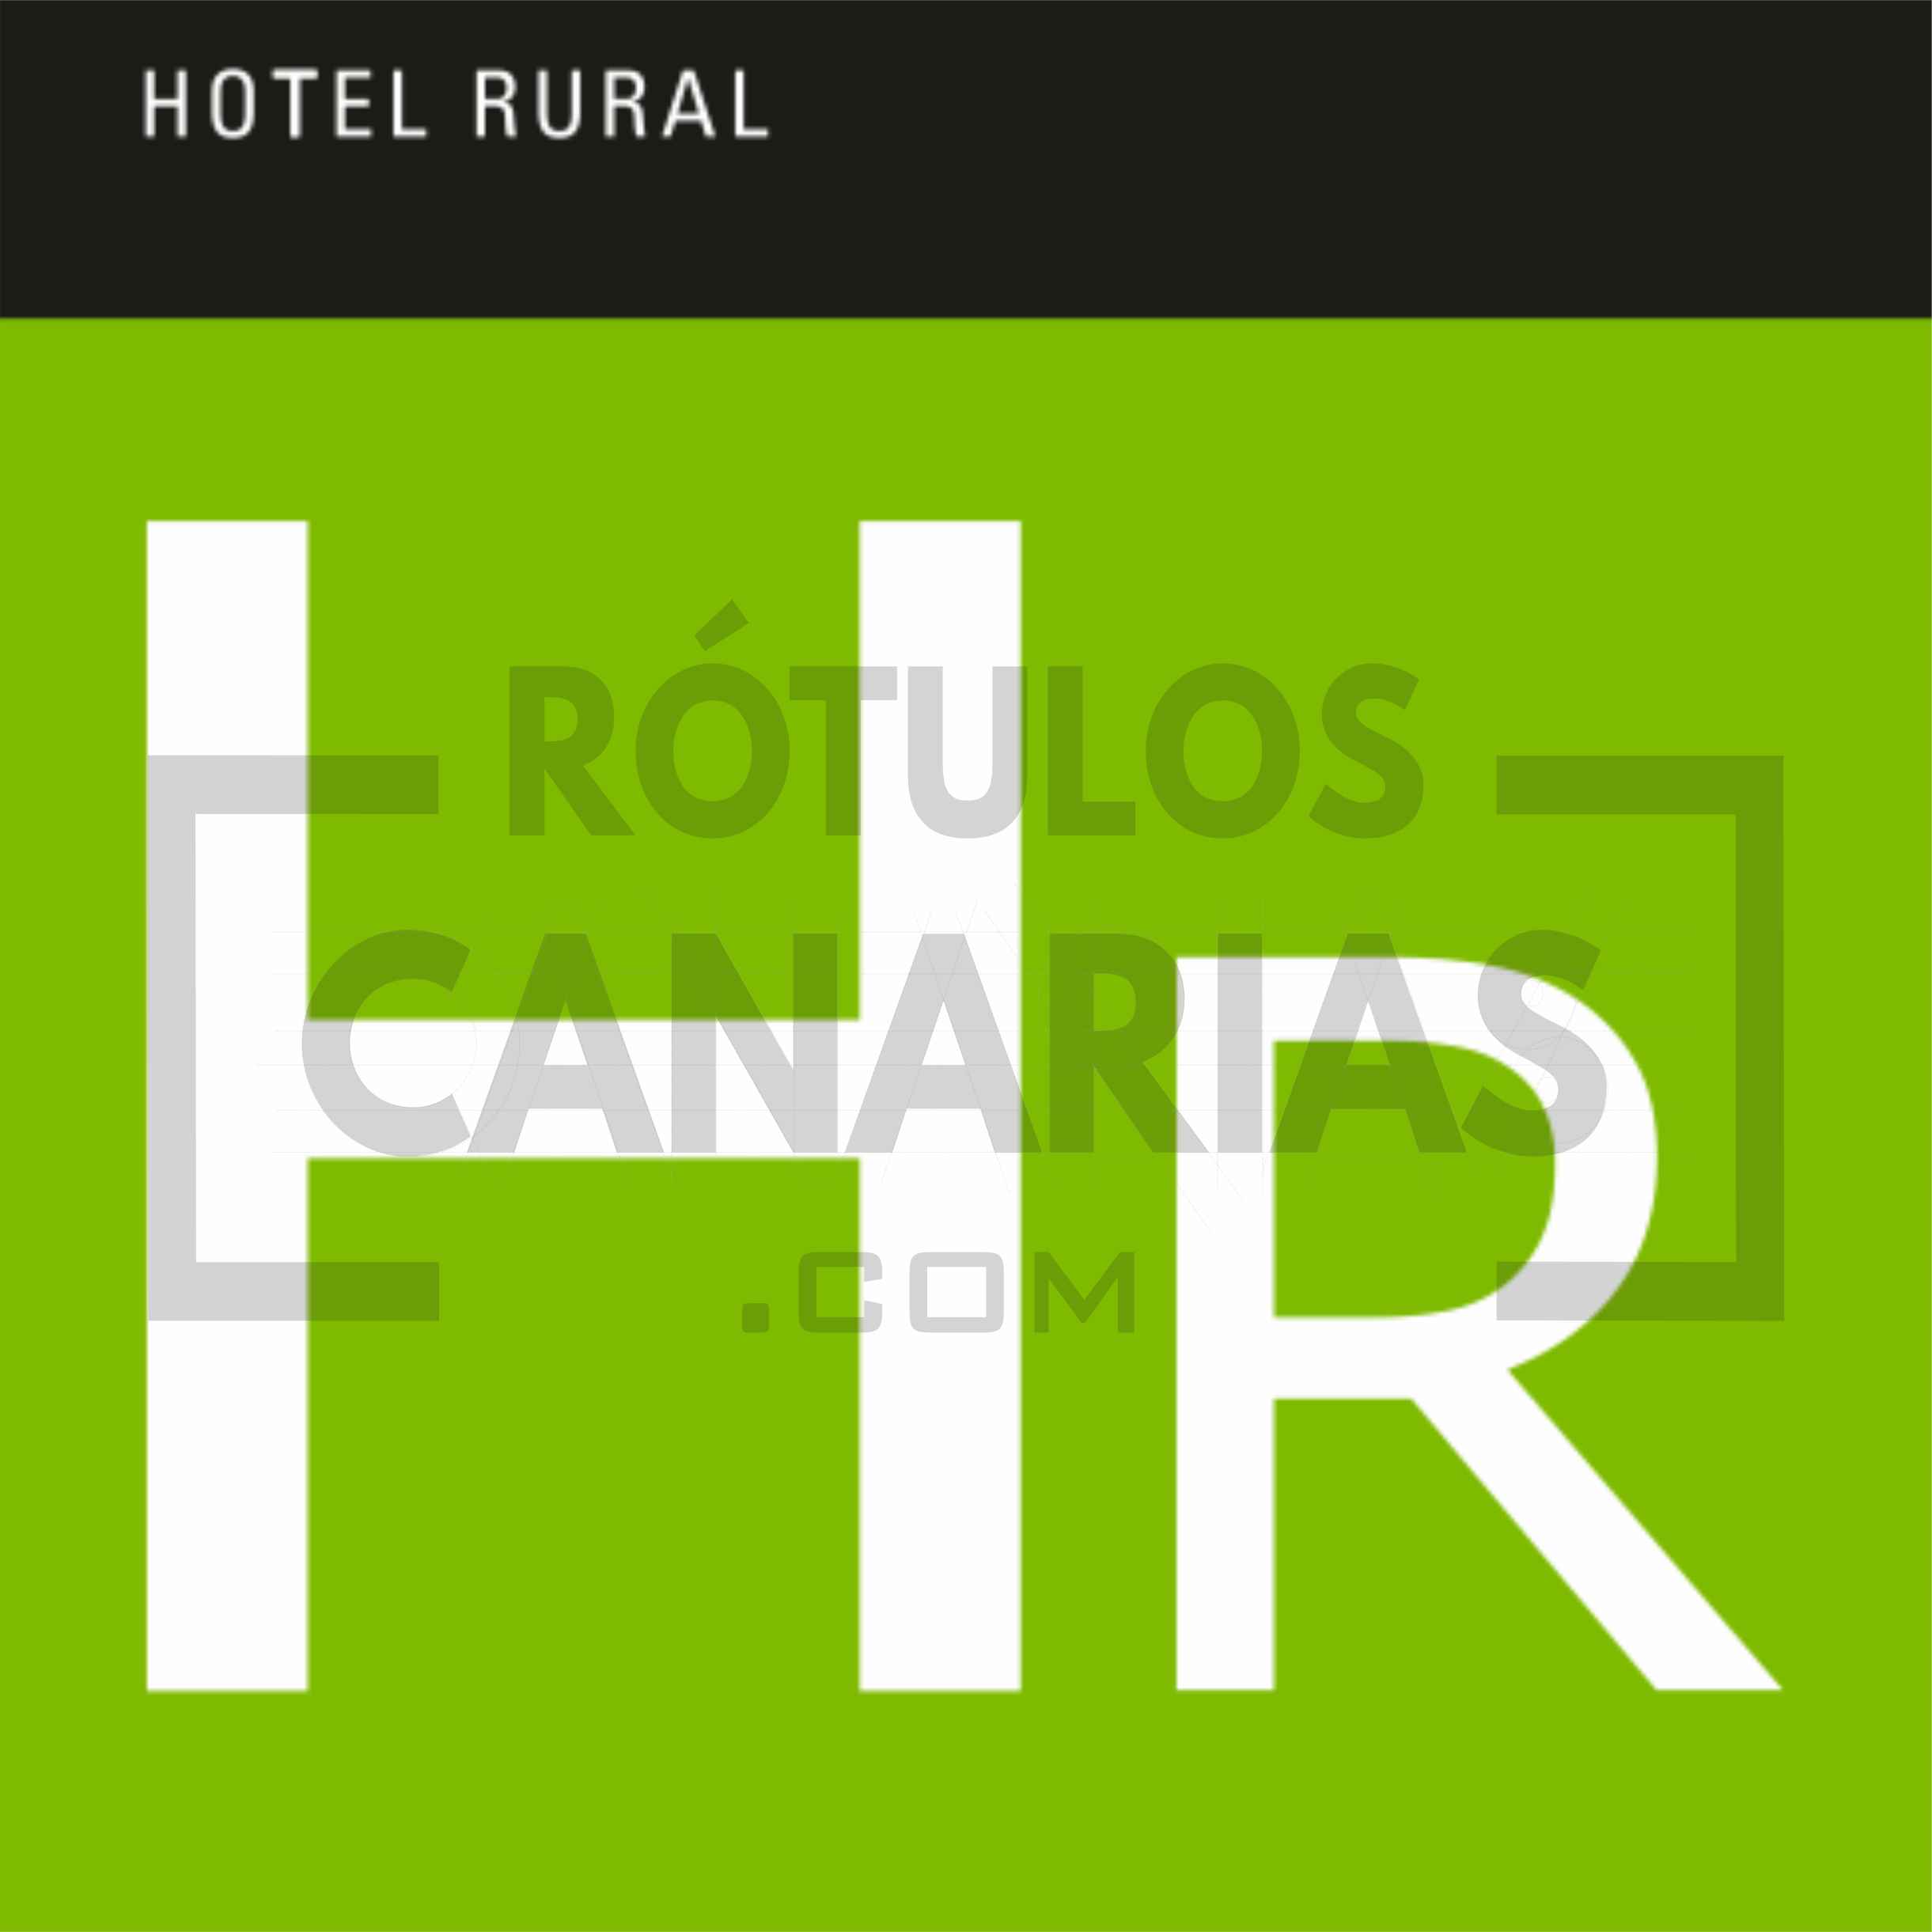 Placa de hotel rural